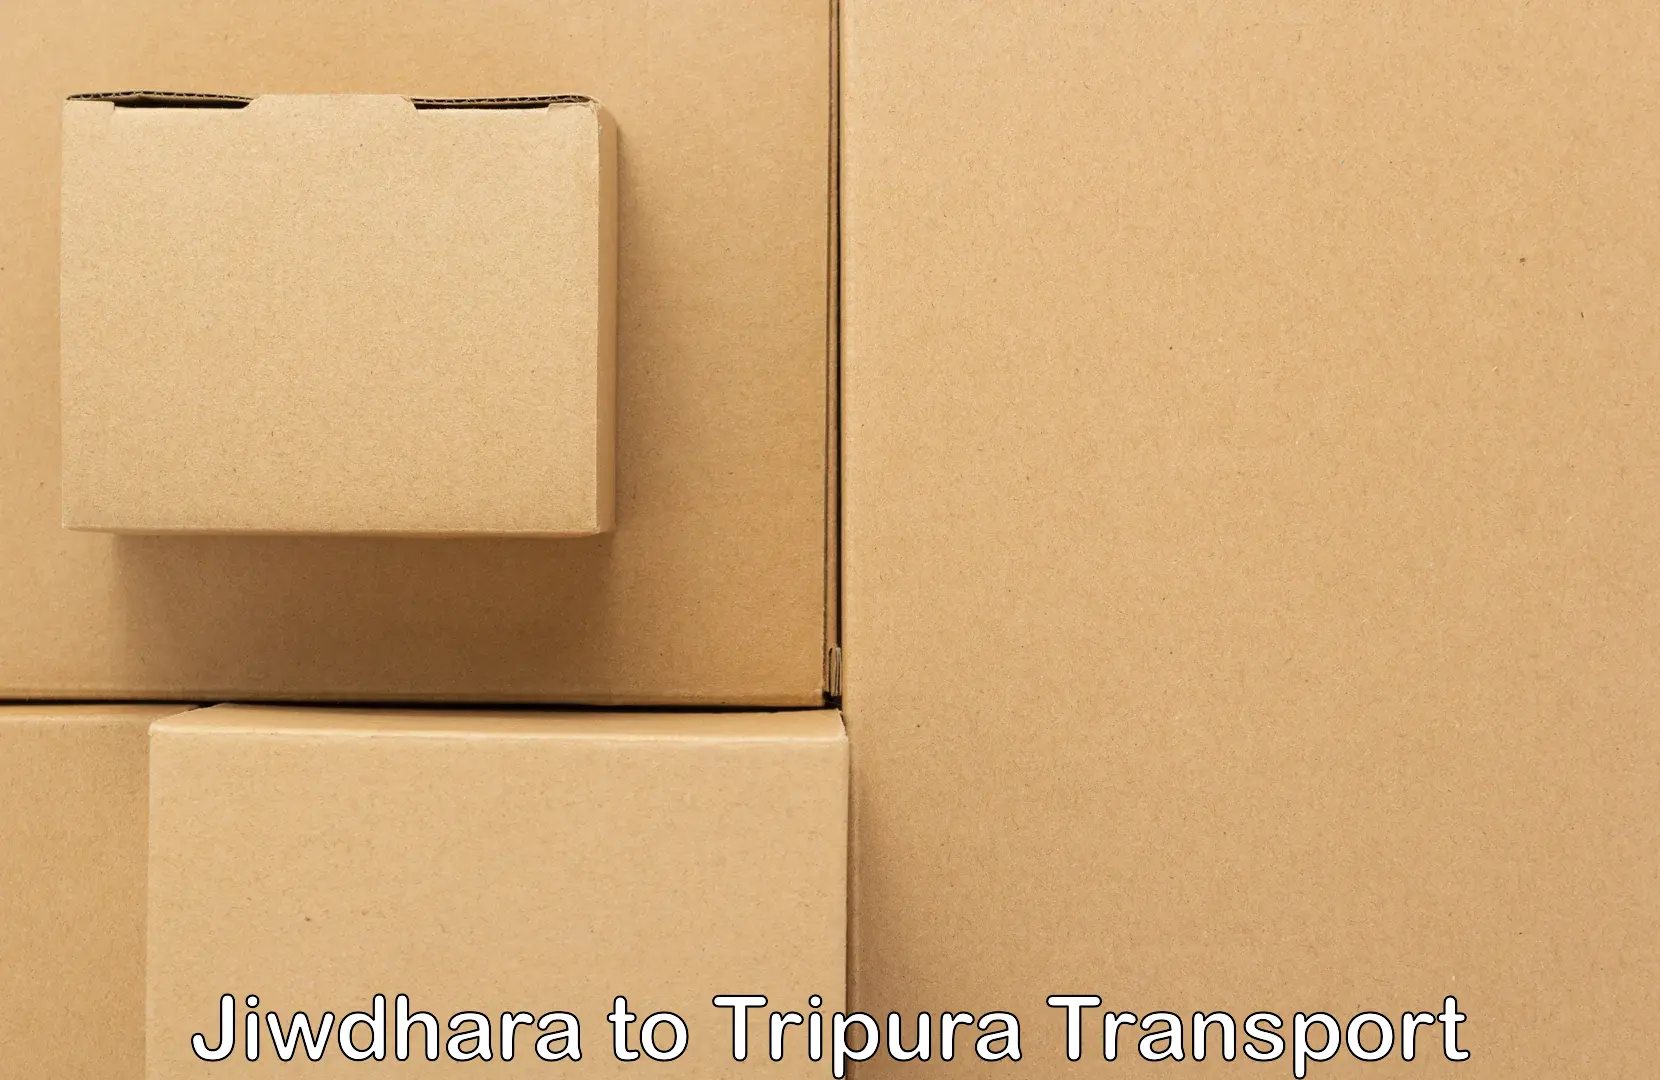 Part load transport service in India Jiwdhara to Dhalai